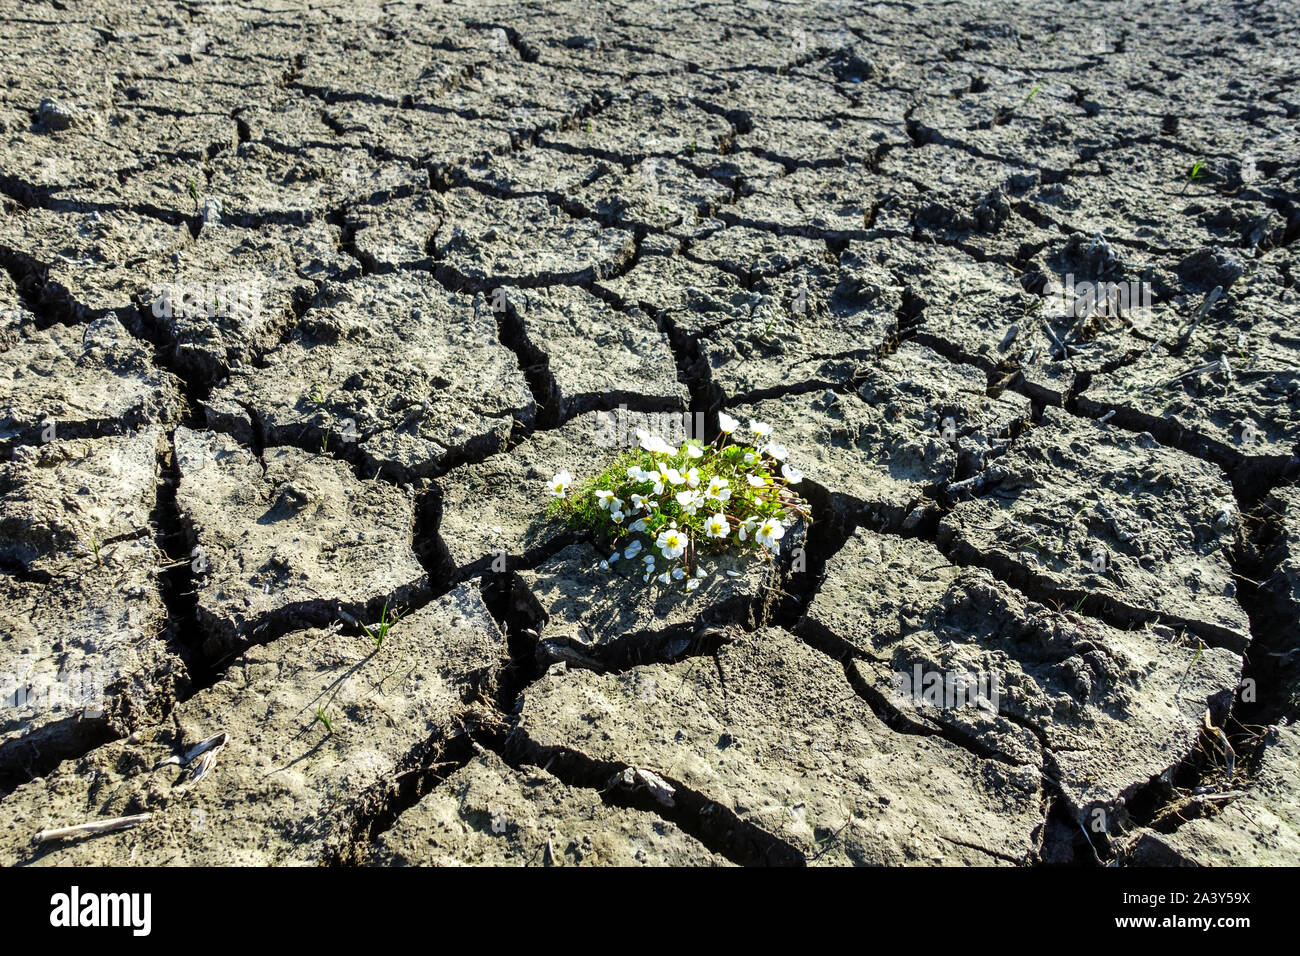 Sécheresse du sol craquelé, plante changement climatique impact manque d'eau scène réchauffement planétaire plante à fleurs dans la boue séchée Banque D'Images